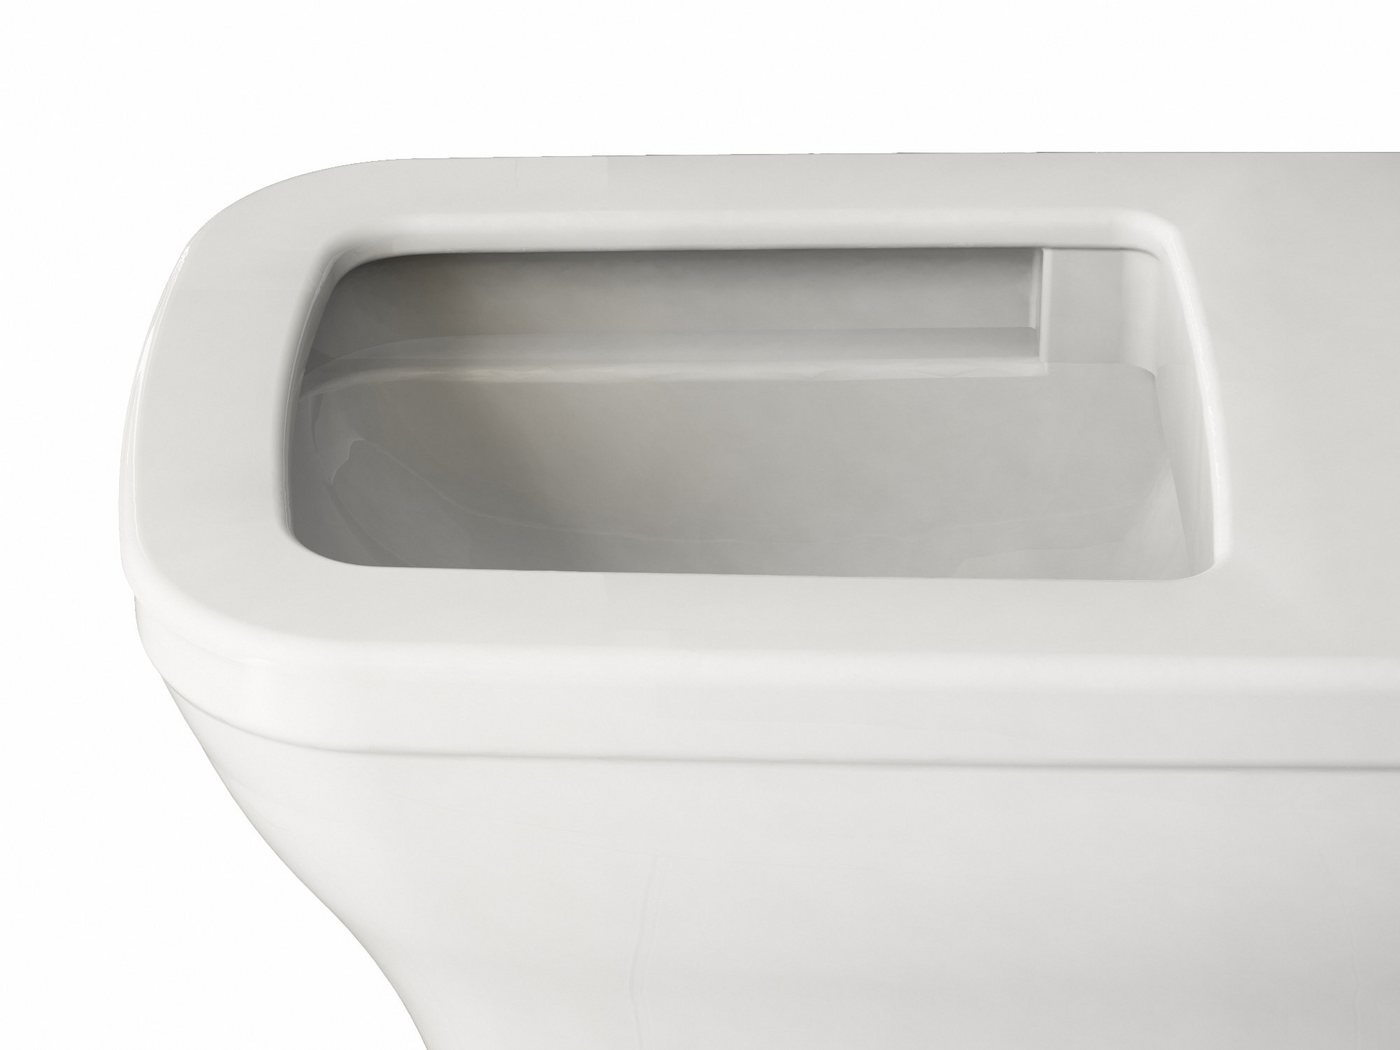 Aqua Bagno Tiefspül-WC Aqua Bagno Firo spülrandlose Toilette inkl. Softclose Sitz - eckiges von Aqua Bagno